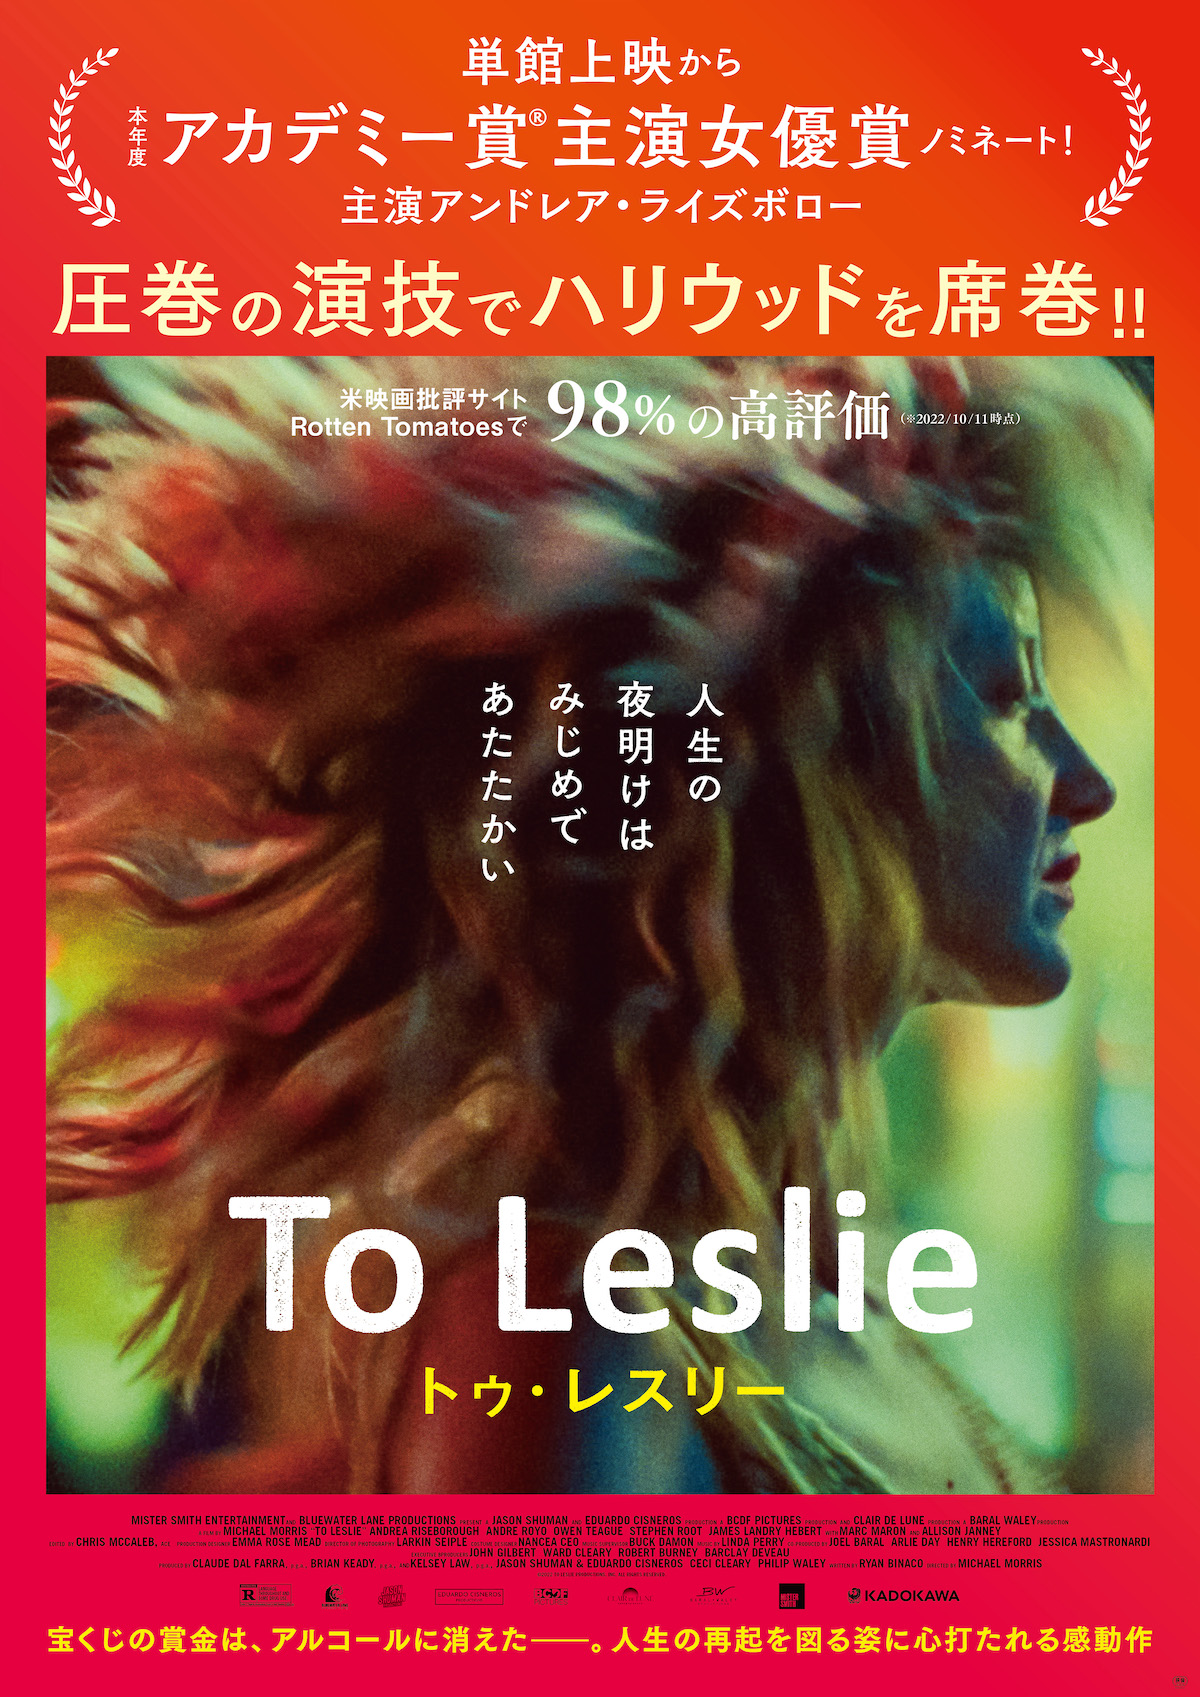 映画『To Leslie トゥ・レスリー』が日本国公開へ—アルコール依存症から人生の再起を図る感動の物語